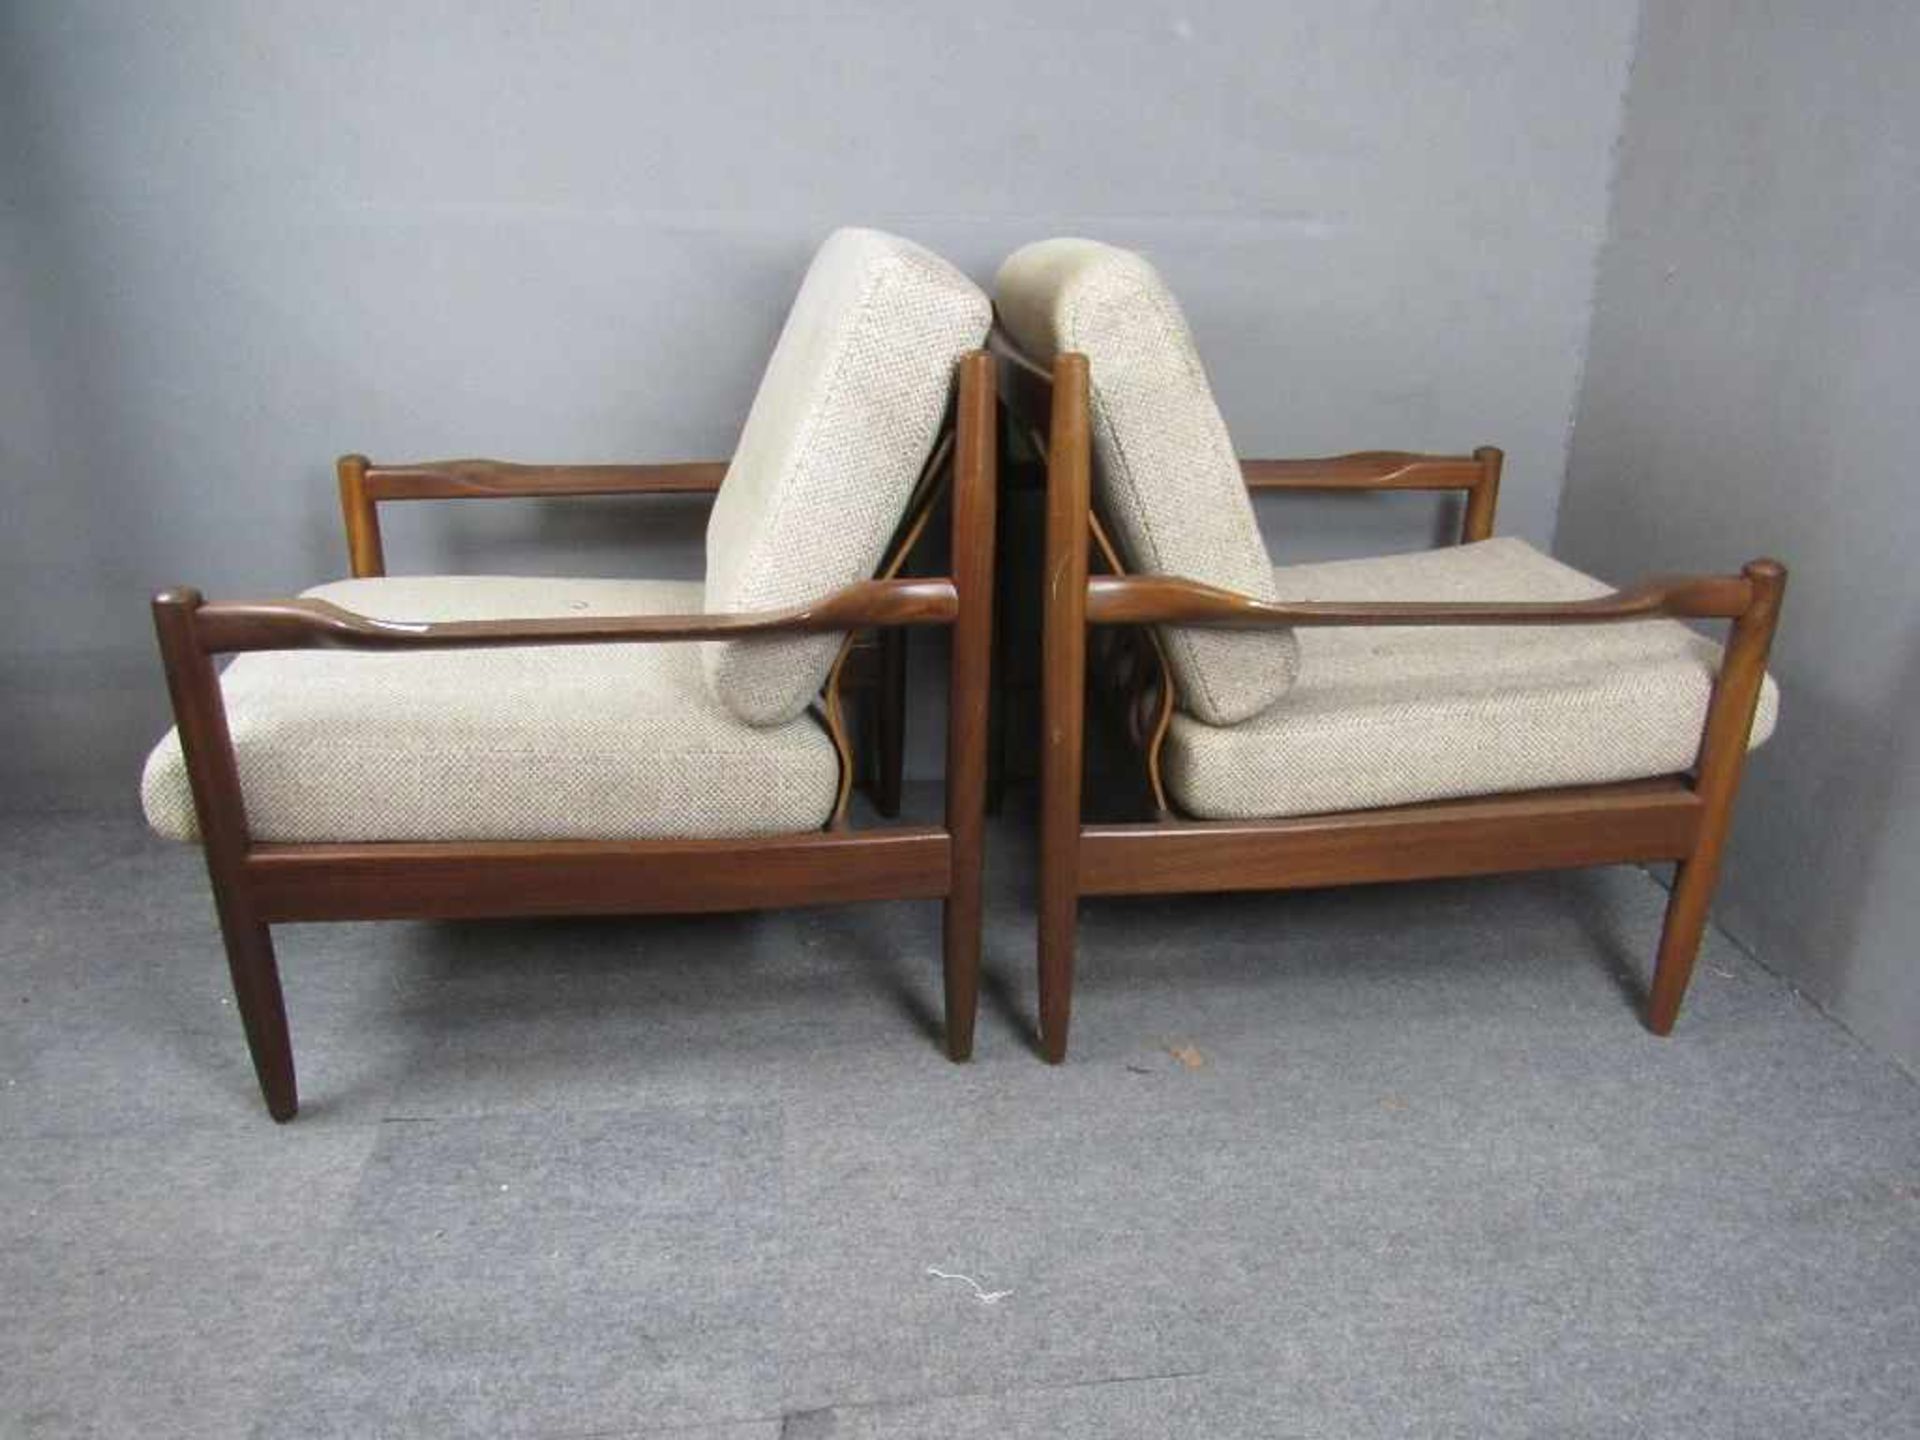 Dänisch Design zwei Lounge Armlehnenstühle sehr schöner wohnfertiger Zustand Teak 60er Jahre<br - Image 2 of 6